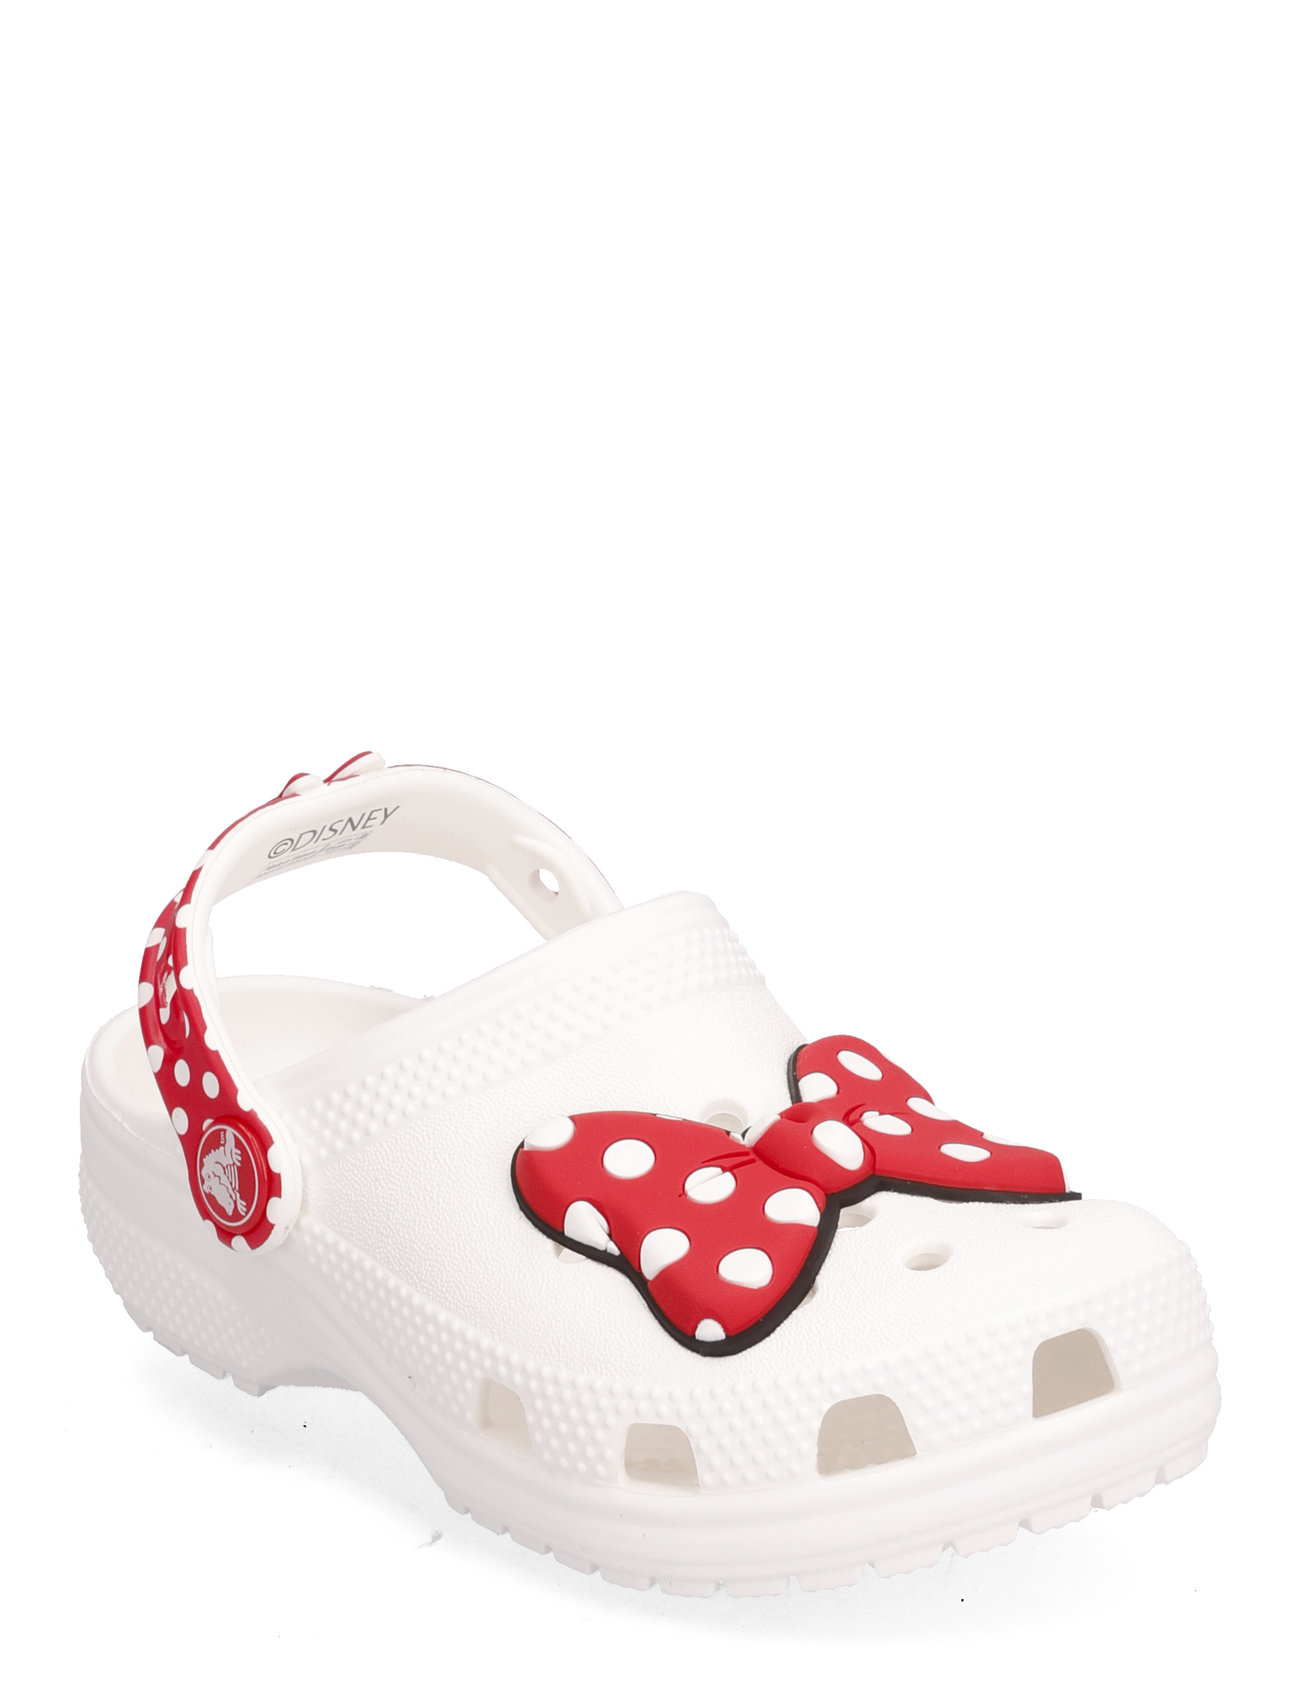 Disney Minnie Mouse Cls Clg T Shoes Clogs White Crocs